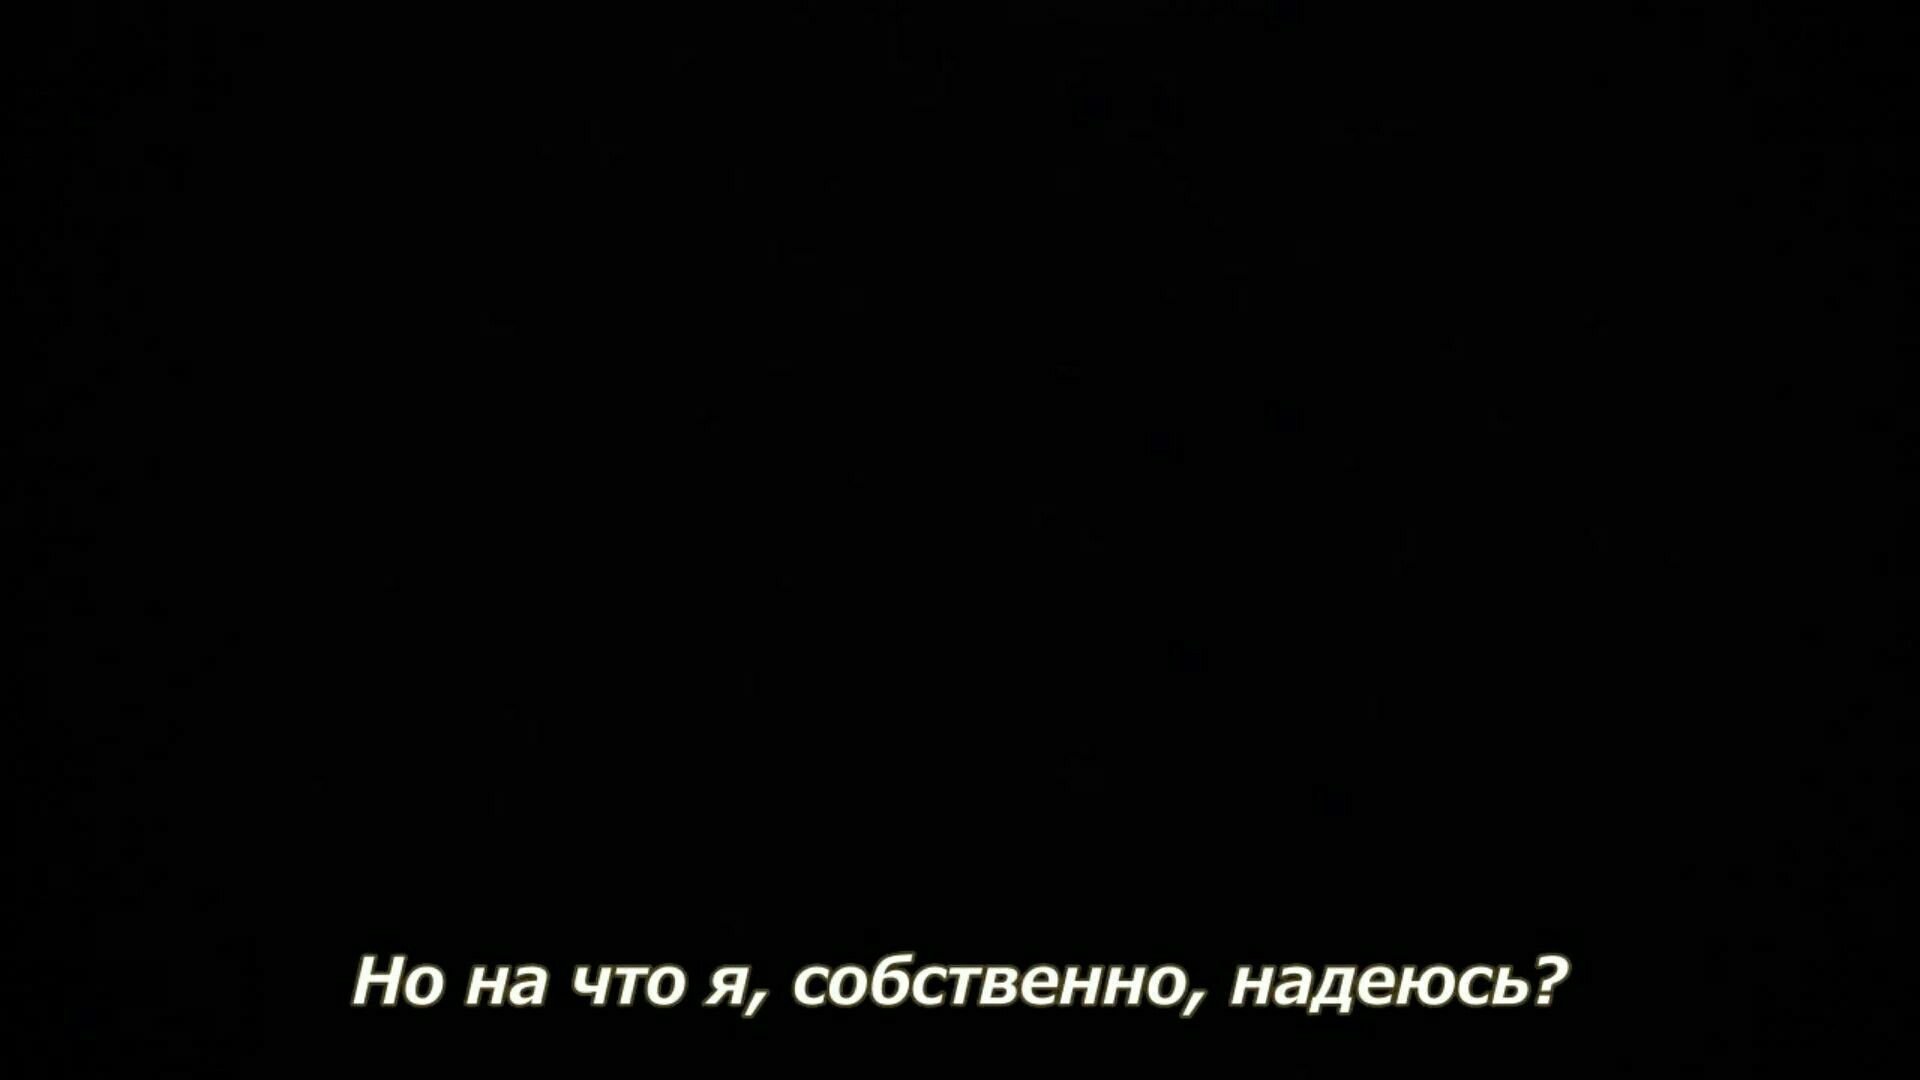 Обои черные с надписями для подростков на русском цитаты фото